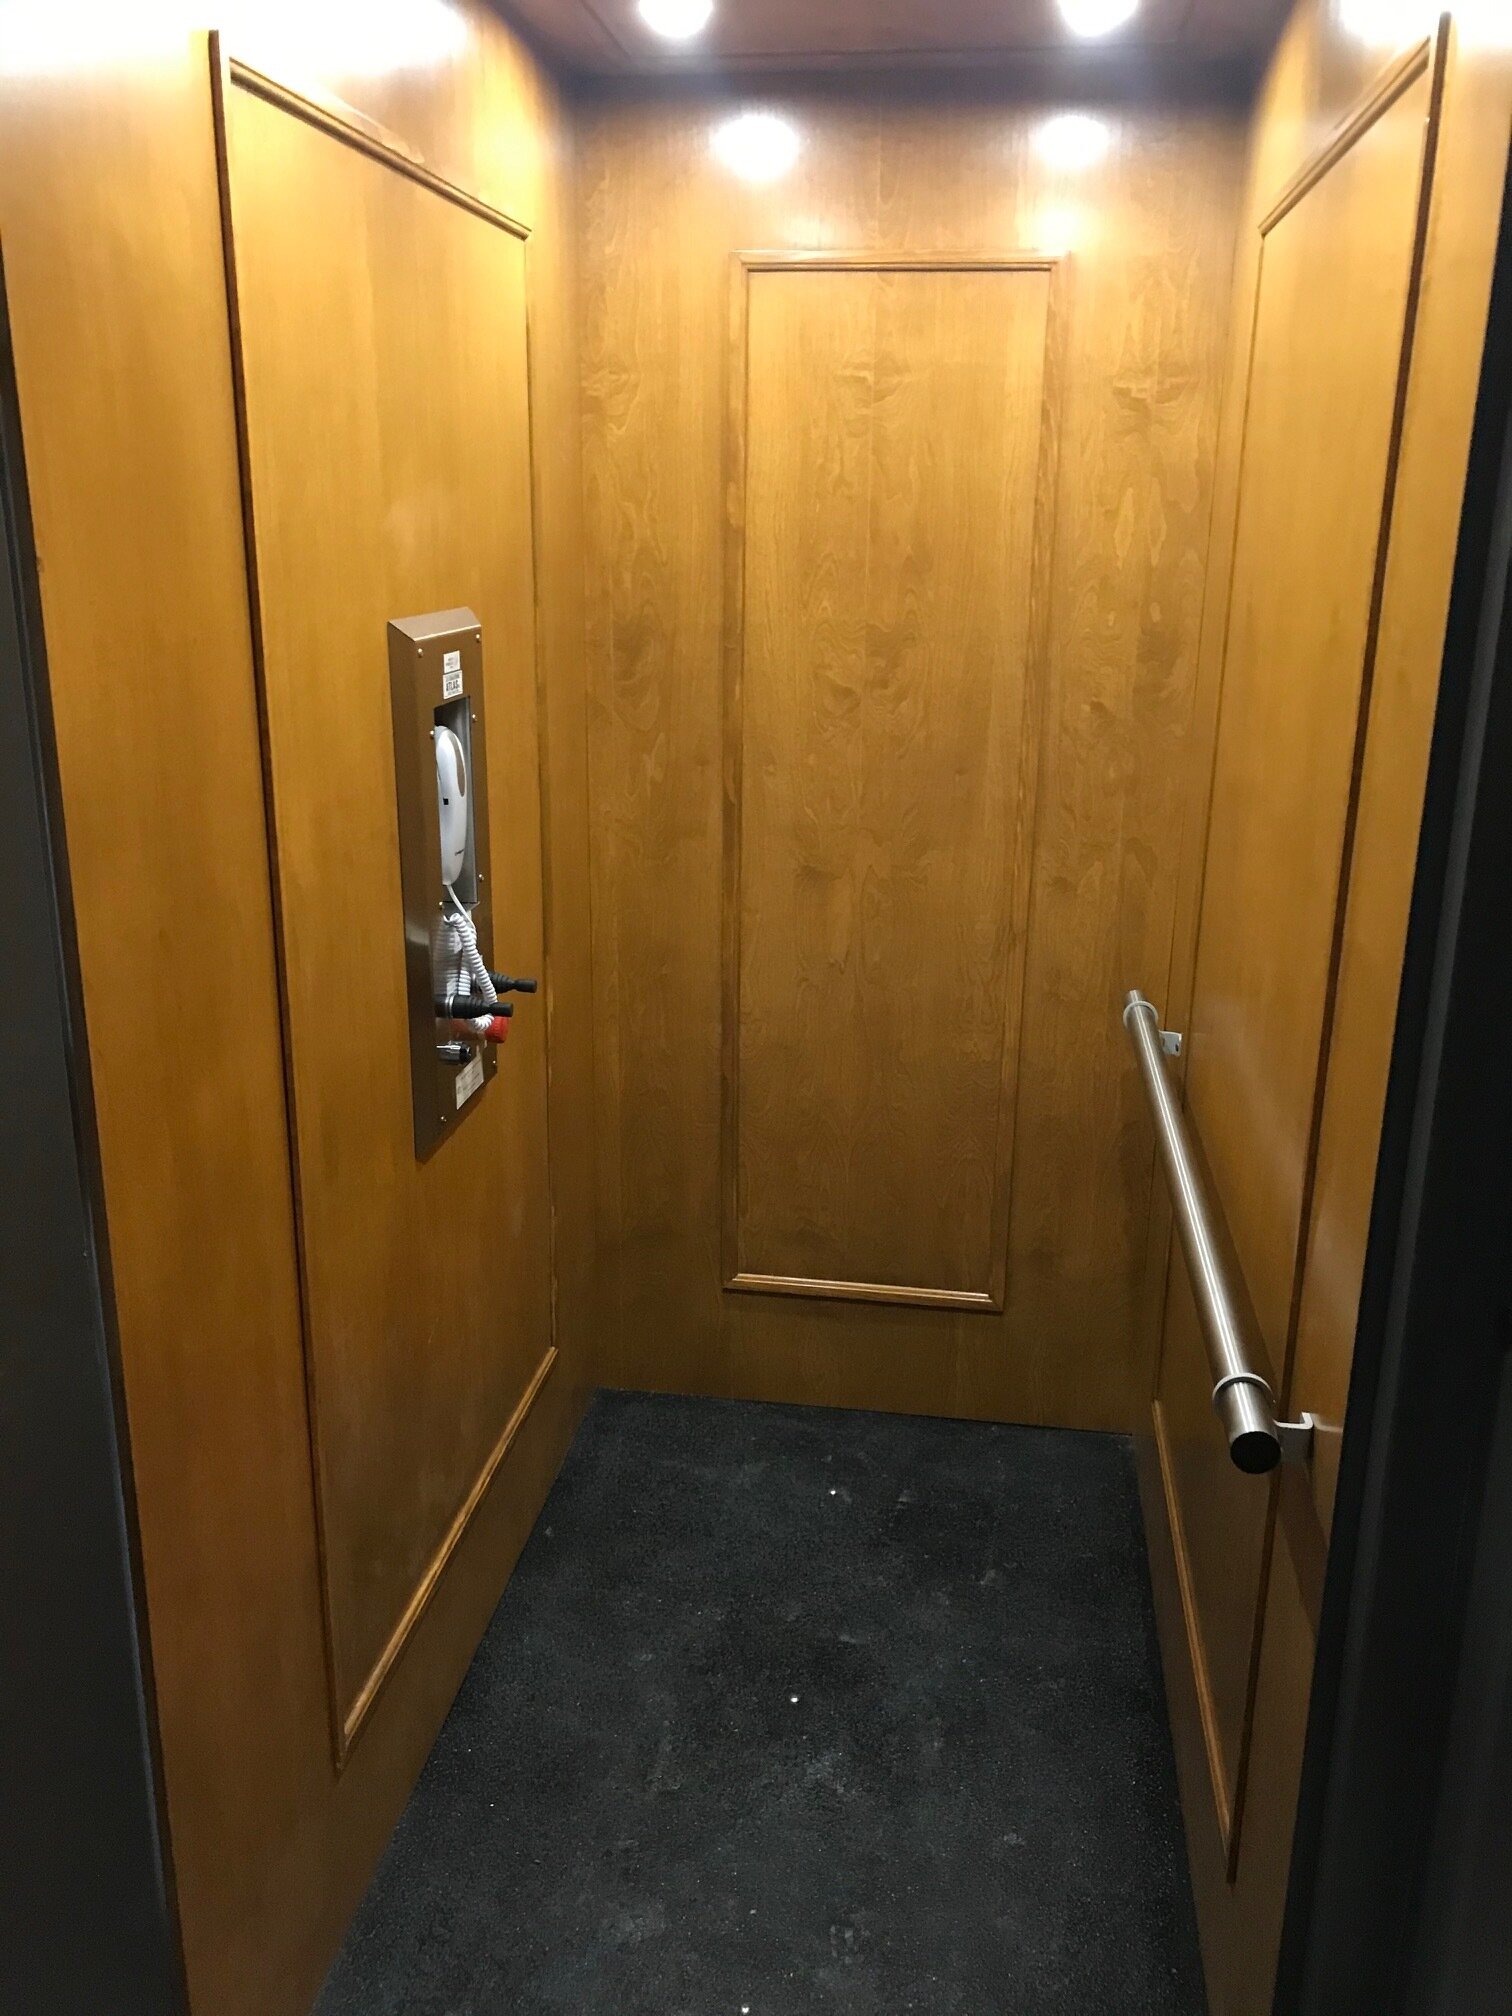 inside lift.jpg